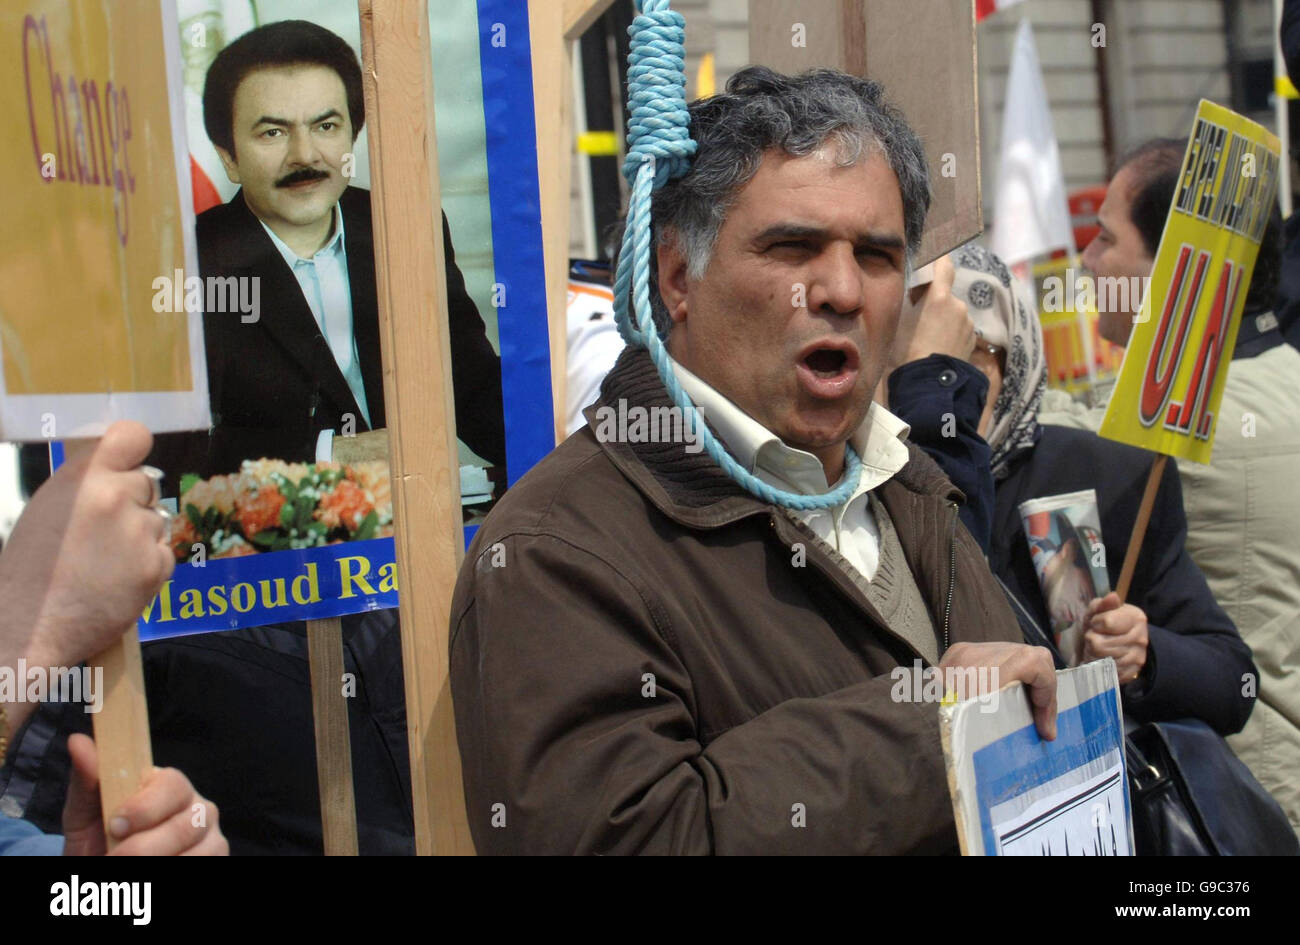 Des membres du mouvement de résistance iranien manifestent sur la place du Parlement à Londres, demandant au gouvernement et au Conseil de sécurité des Nations Unies de « réprimer le terrorisme débridé des mollahs » contre des citoyens irakiens innocents et des réfugiés politiques iraniens dans la ville d'Ashraf en Irak. Banque D'Images